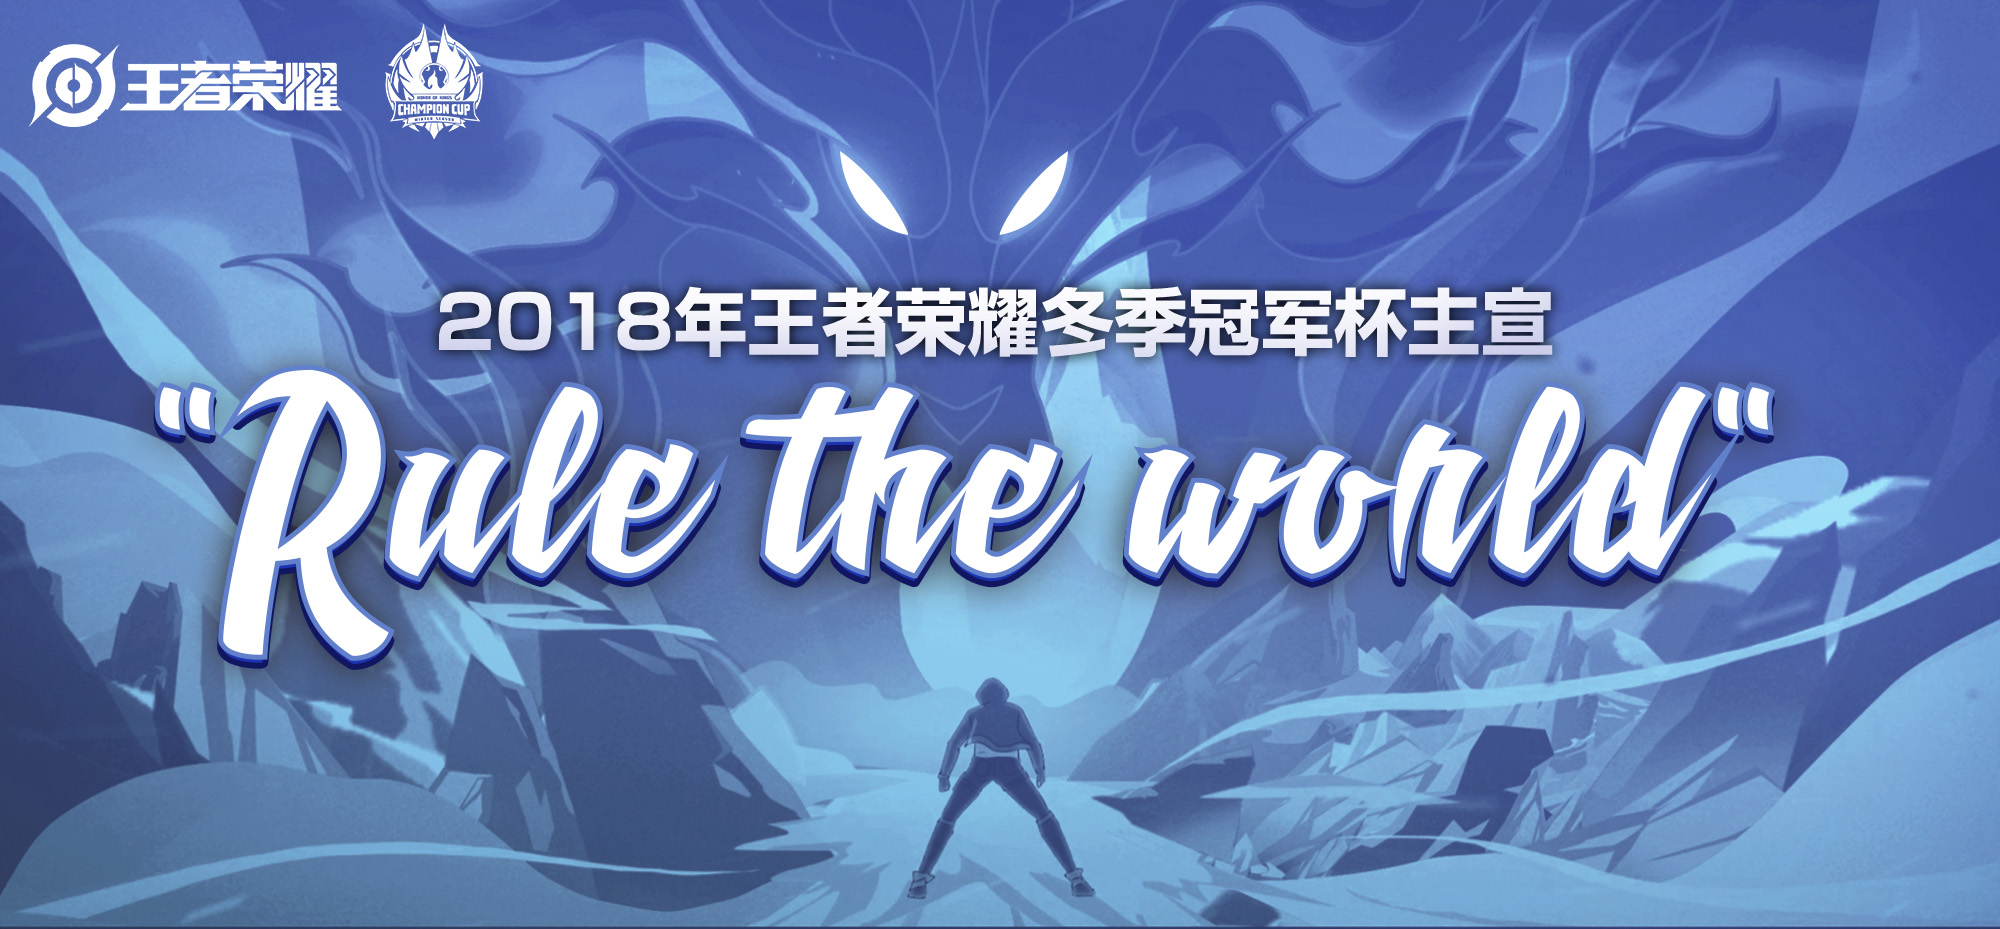 2018年王者荣耀冬季冠军杯主宣传片《RuletheWorld》